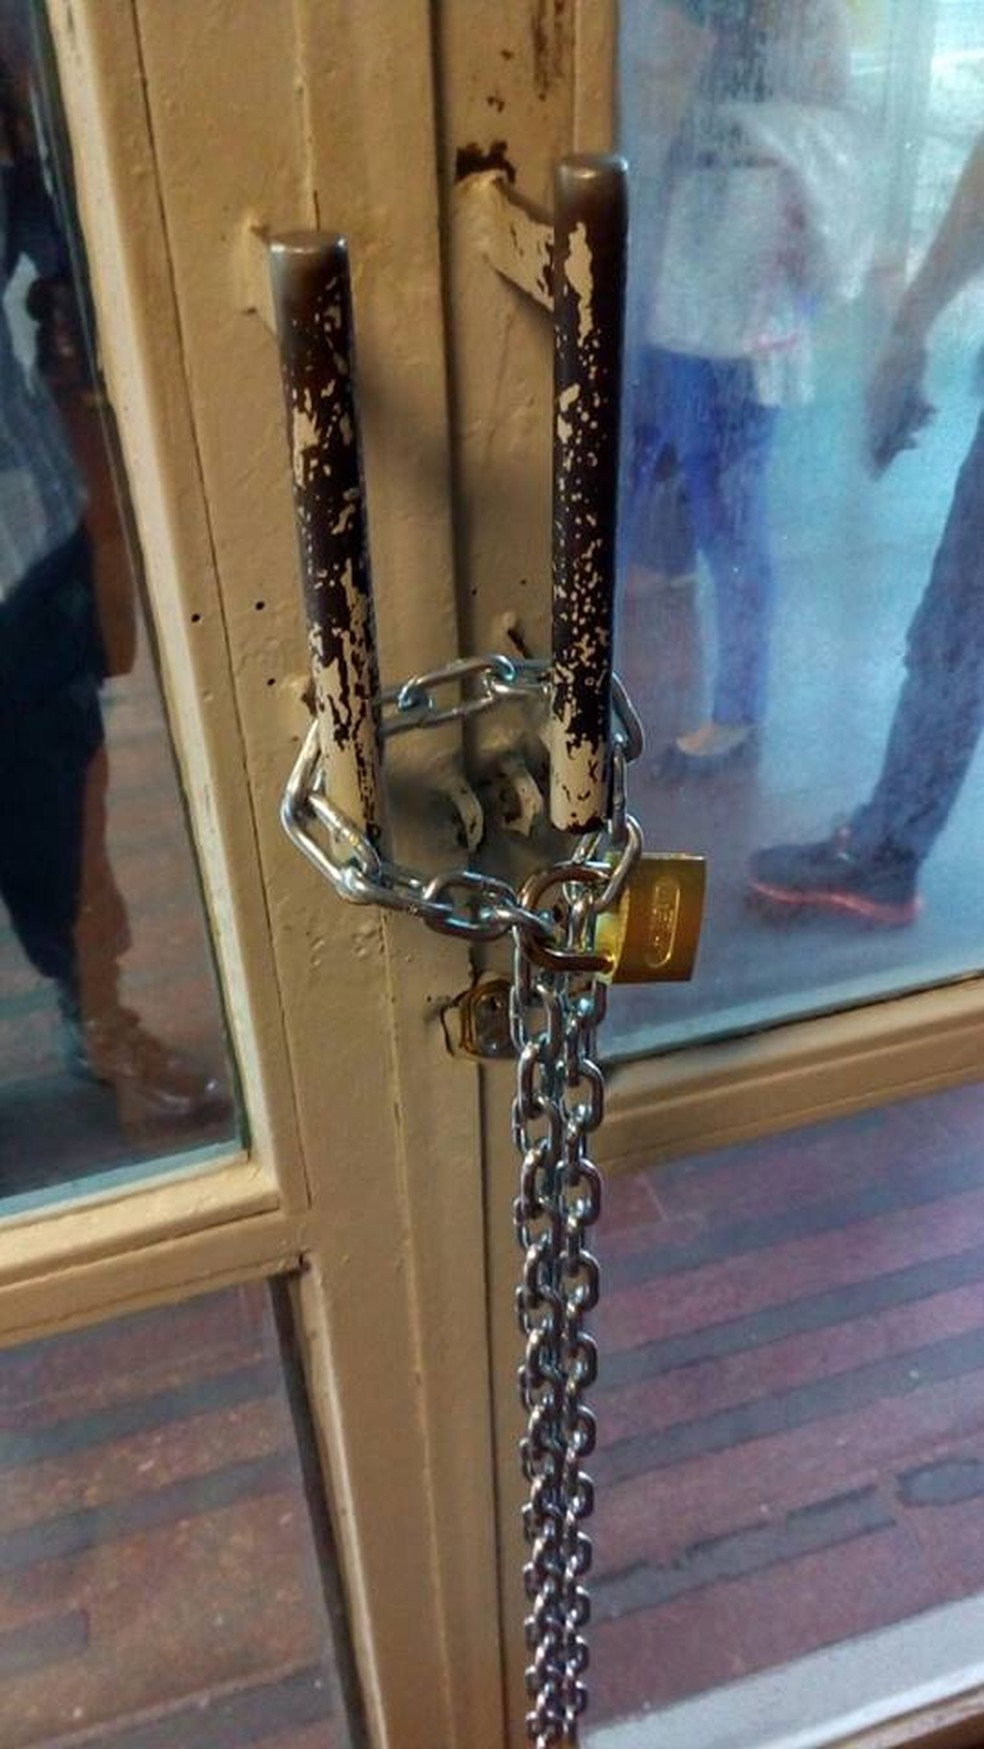 Porta trancada por manifestante em ocupação em sede de ministério (Foto: Reprodução)